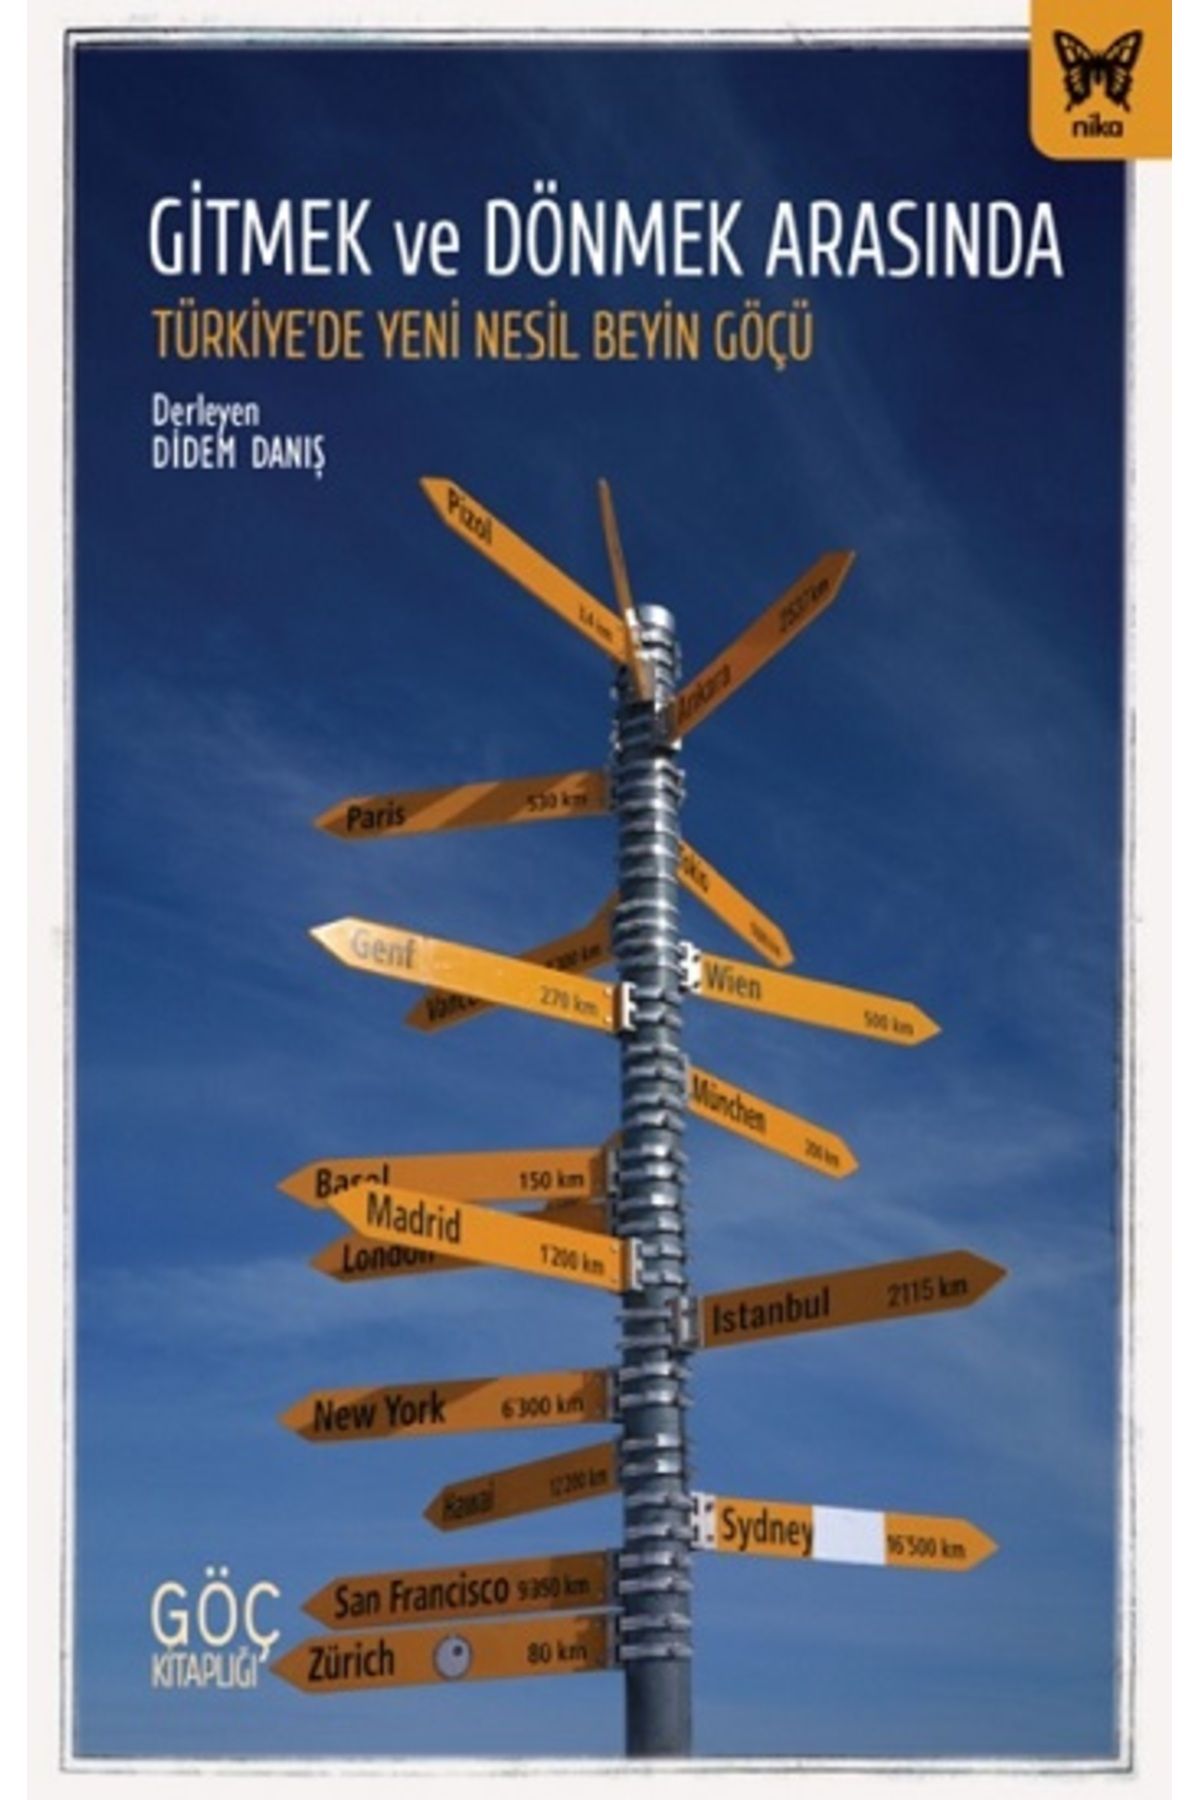 Nika Yayınevi Gitmek ve Dönmek Arasında: Türkiye’de Yeni Nesil Beyin Göçü kitabı - Didem Danış - Nika Yayınevi